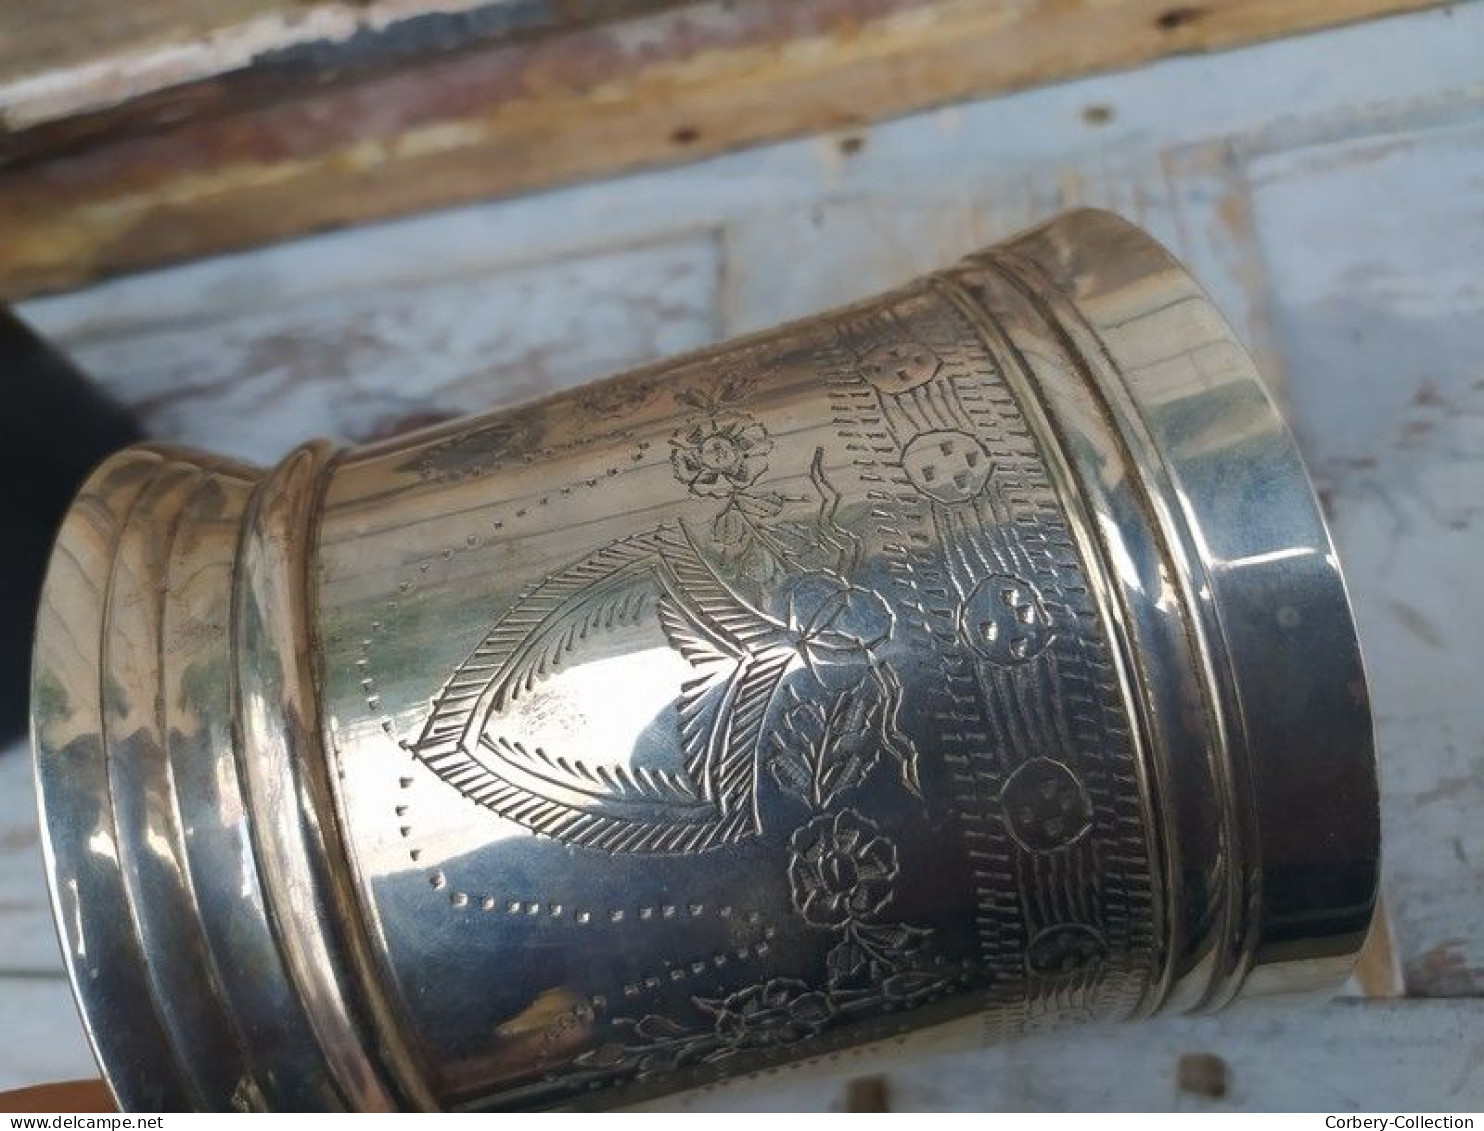 Ancien Vase Argent ou Métal Ciselé Blason Style Anglais